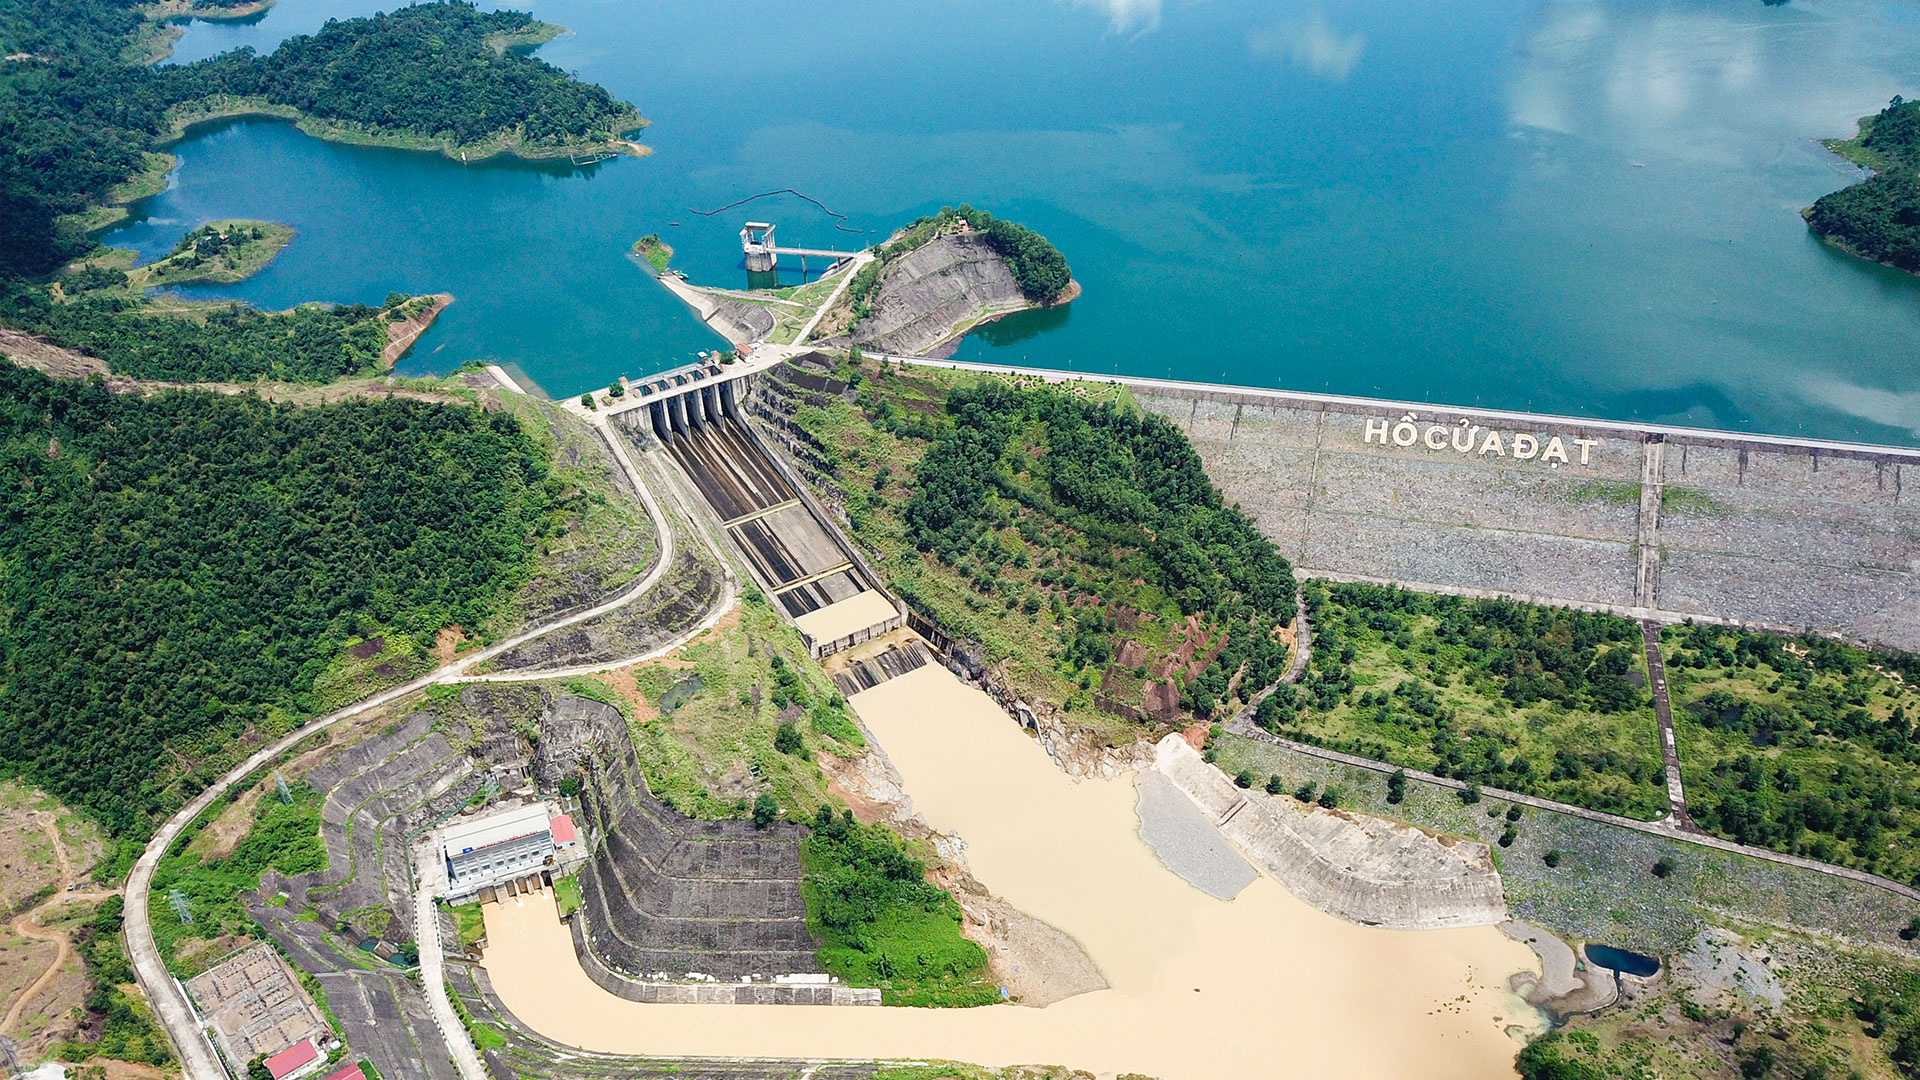 Cua Dat hydropower plant